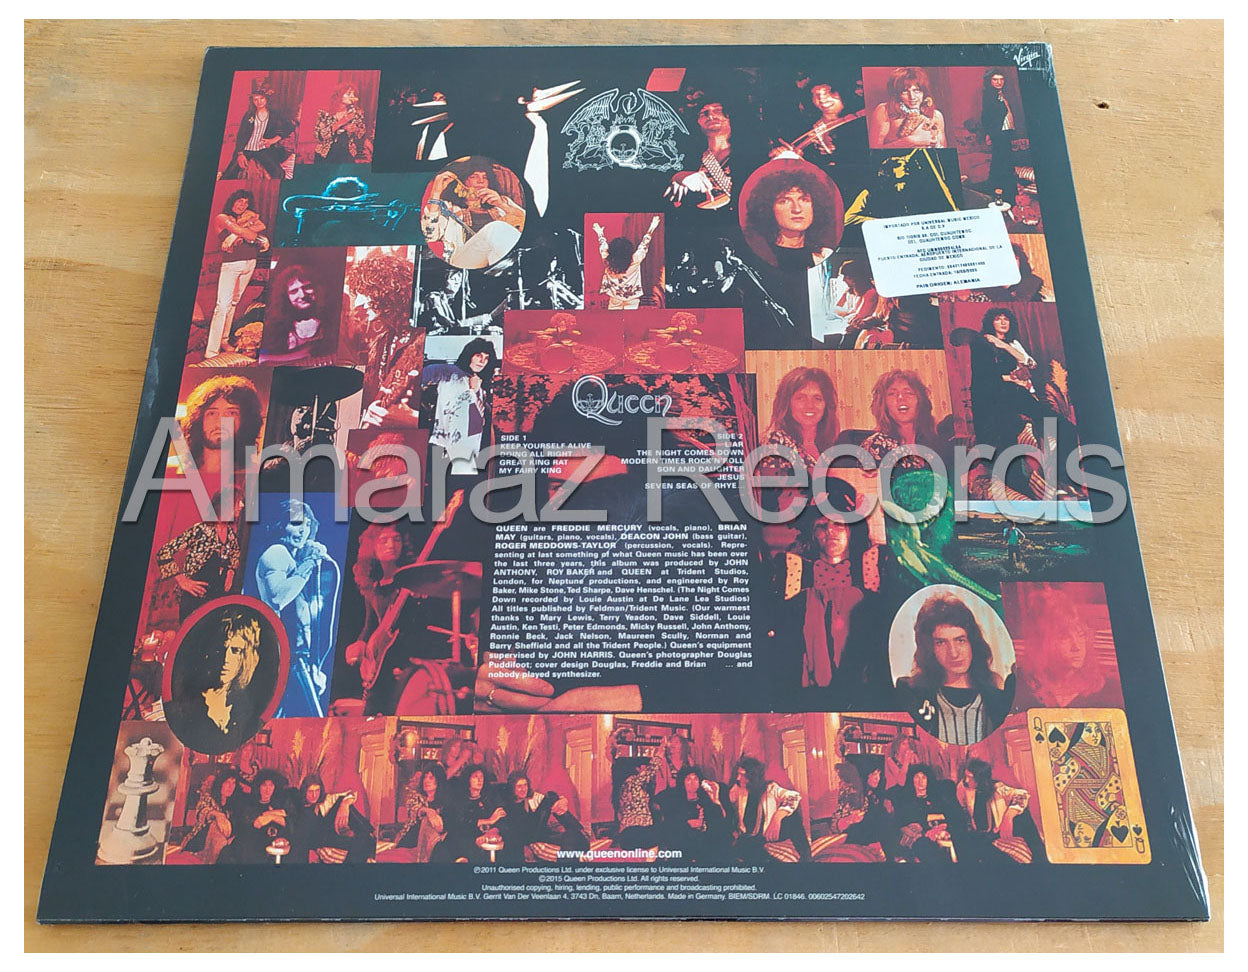 Queen Queen Vinyl LP